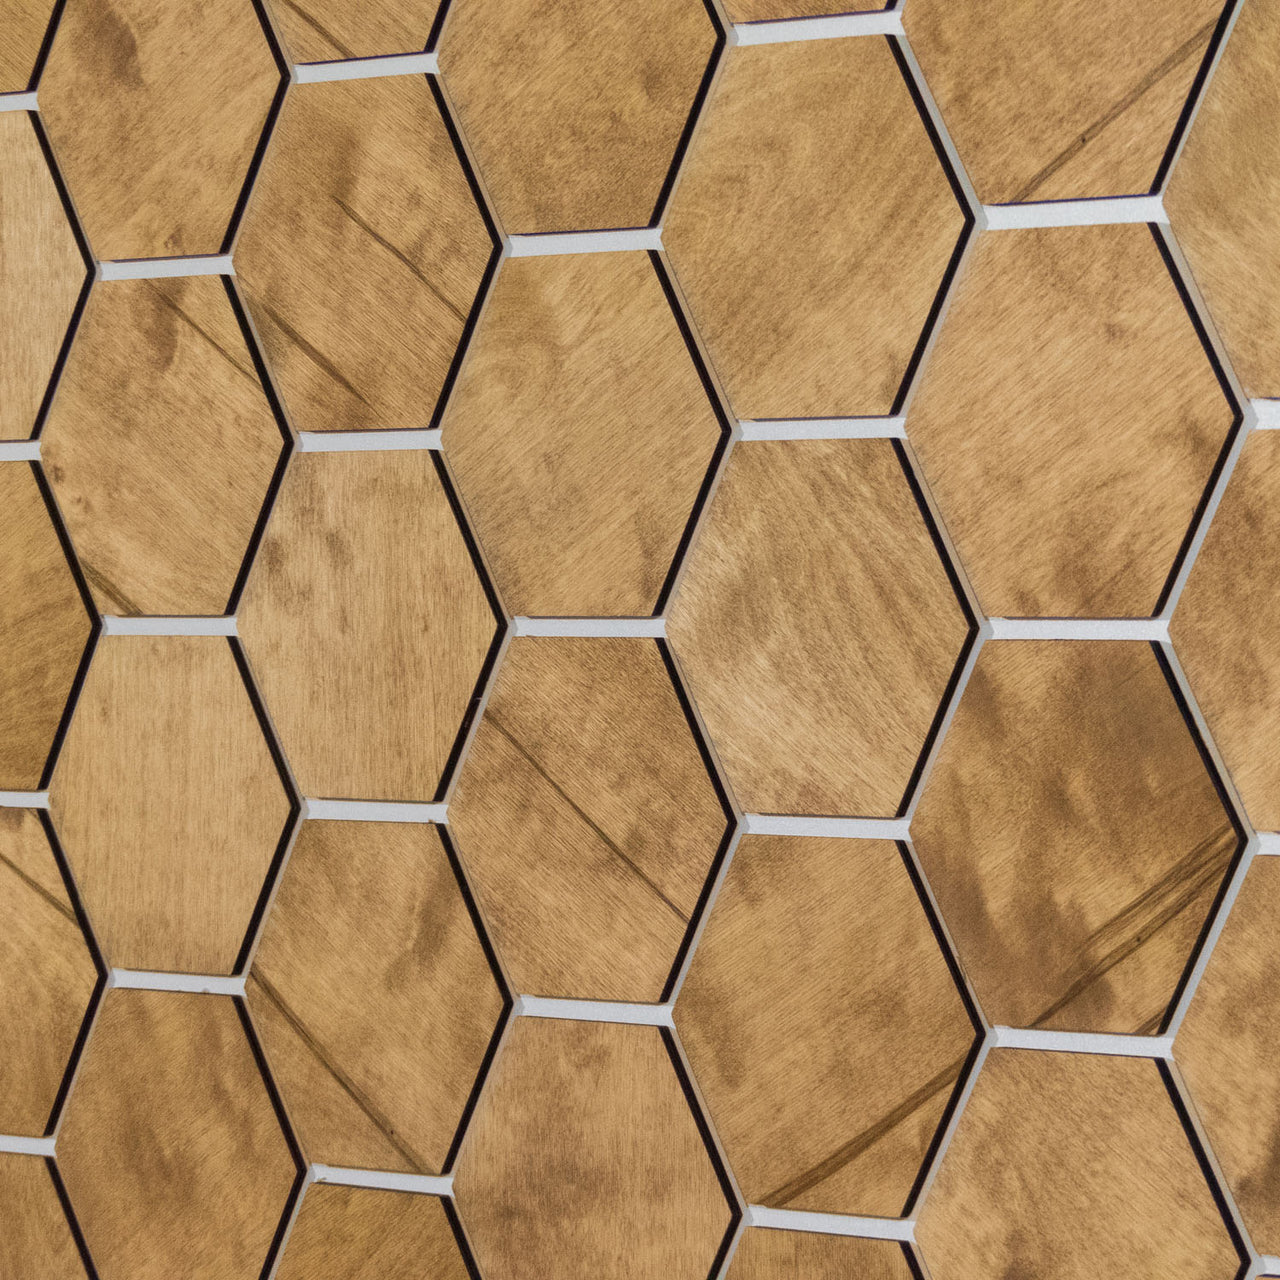 Hexagonal Wooden Wall Panels [32pcs] Birch Medium/Light